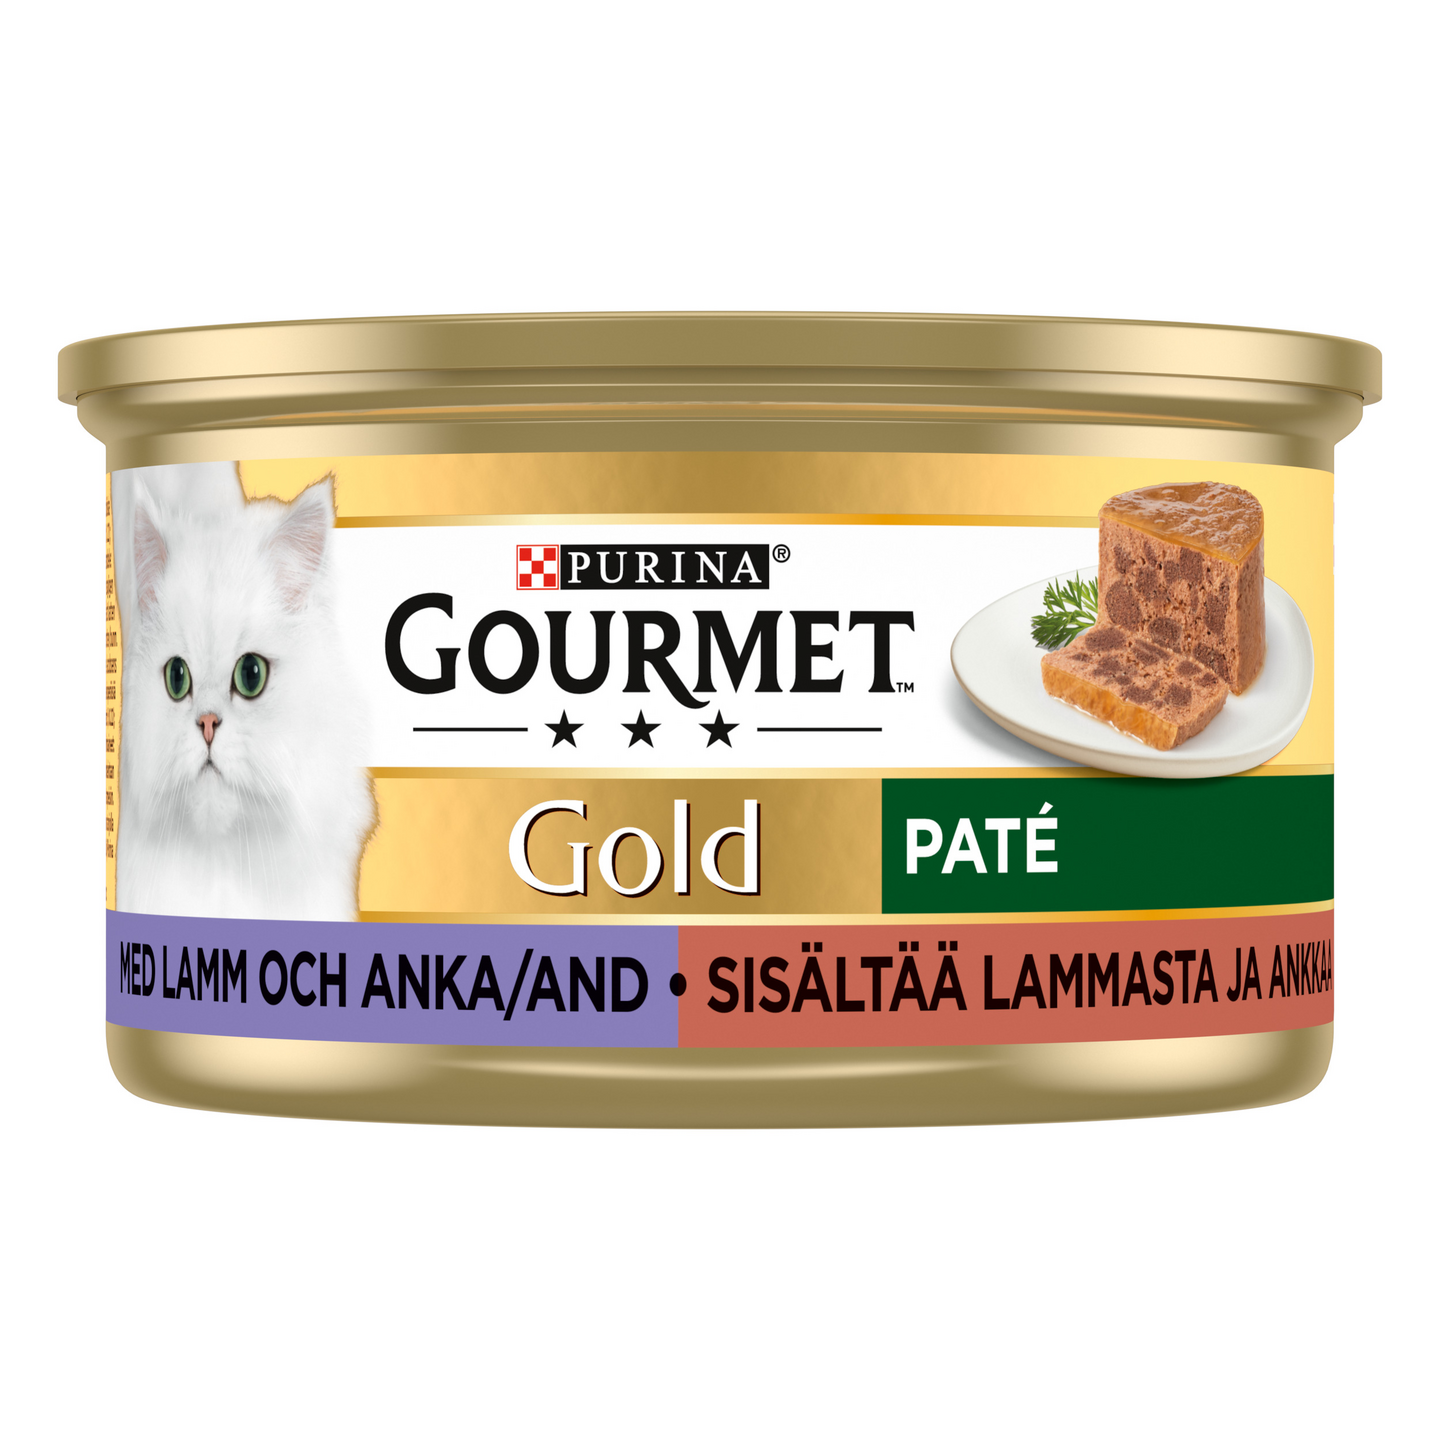 Gourmet Gold Lammasta ja Ankkaa Patee 85g kissanruoka